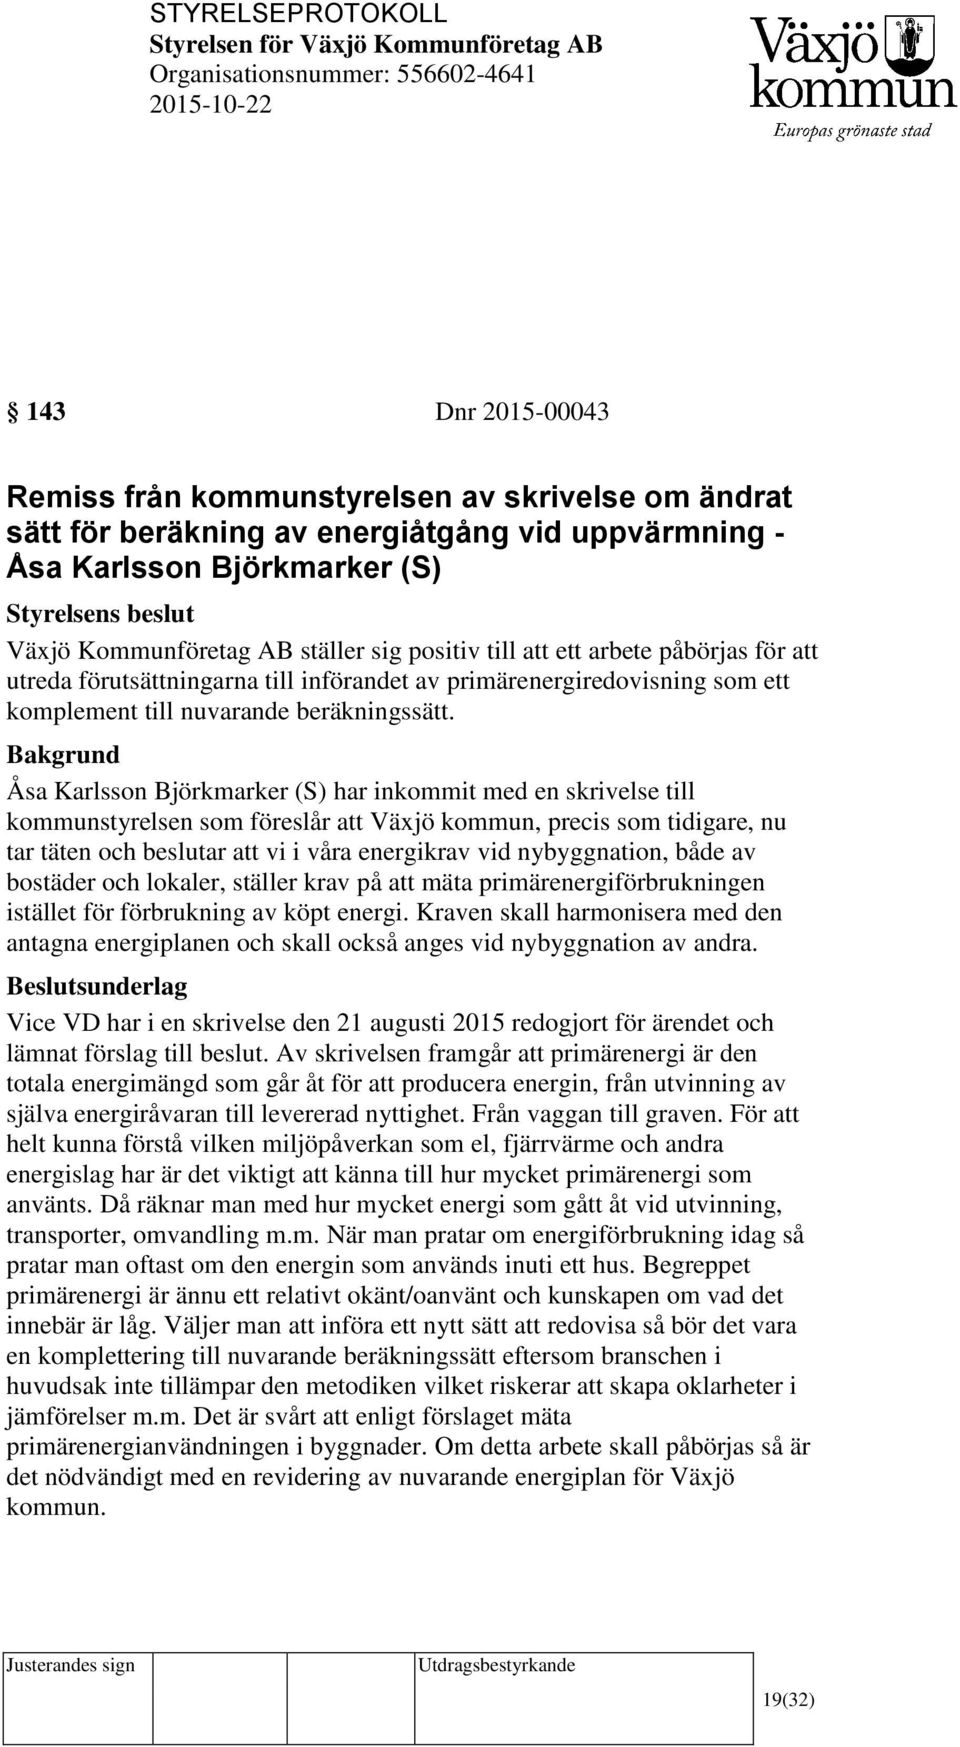 Åsa Karlsson Björkmarker (S) har inkommit med en skrivelse till kommunstyrelsen som föreslår att Växjö kommun, precis som tidigare, nu tar täten och beslutar att vi i våra energikrav vid